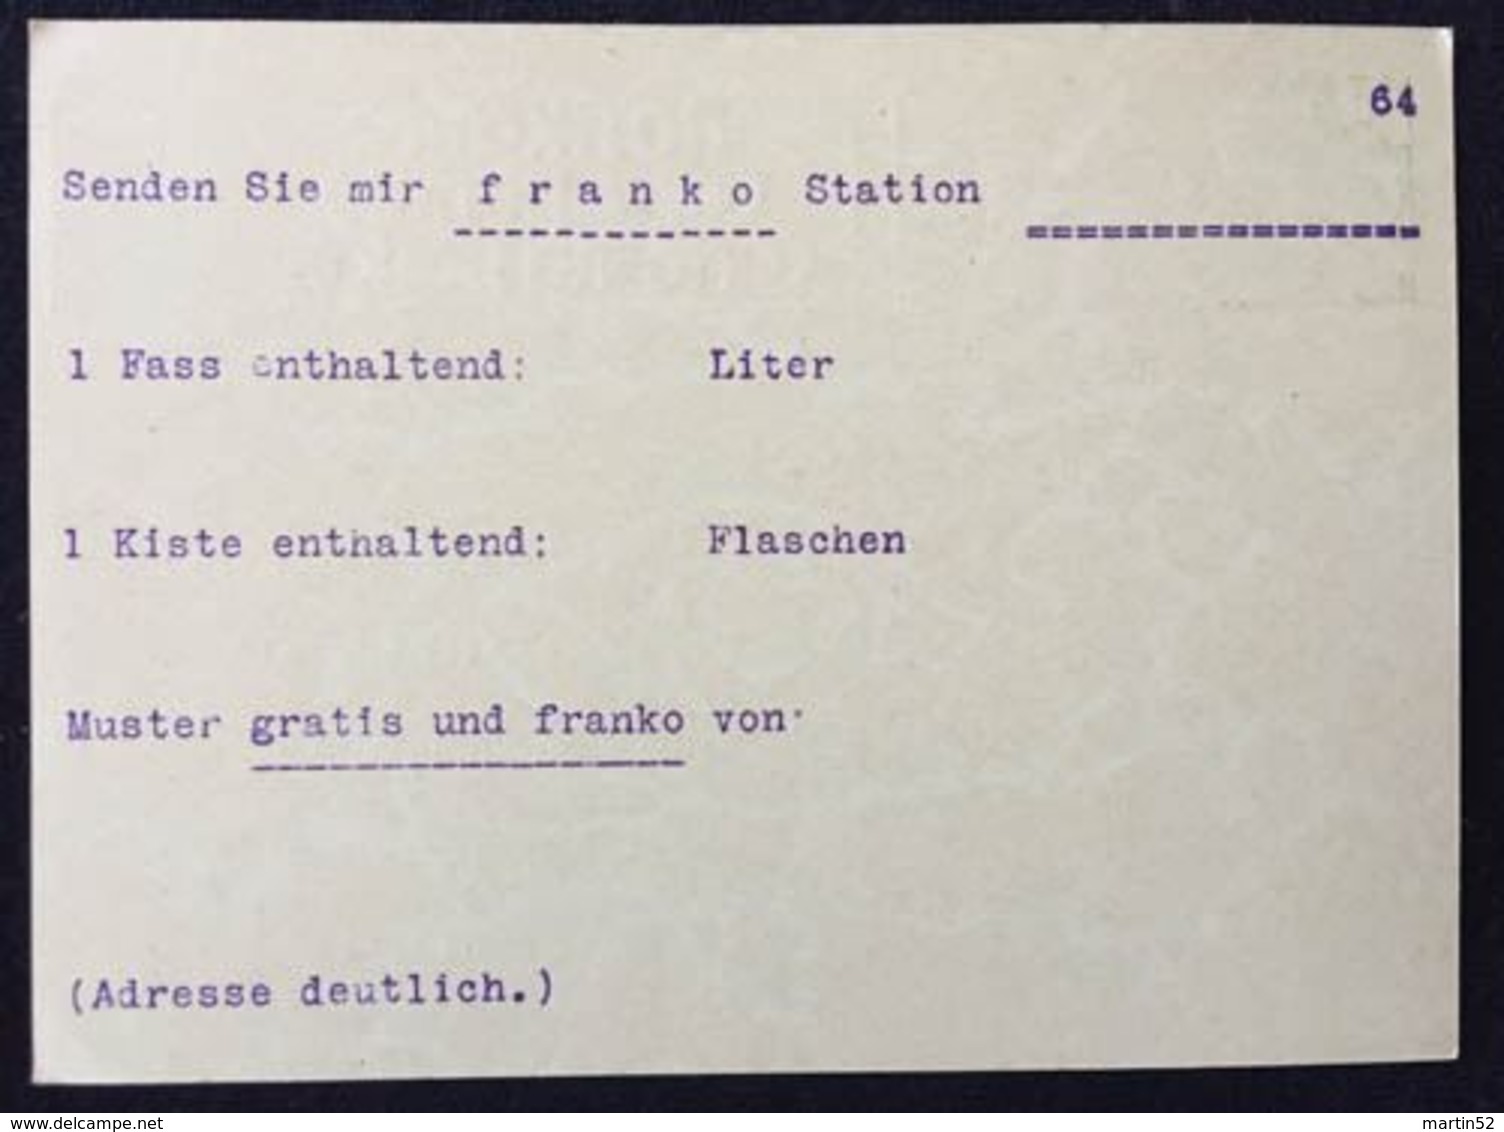 Schweiz Suisse Um 1930: Bild-PK "NEUVEVILLE" Adressiert Nach Chur (Veltliner-Weine) Aber Ungelaufen - Non-circulé - Vins & Alcools